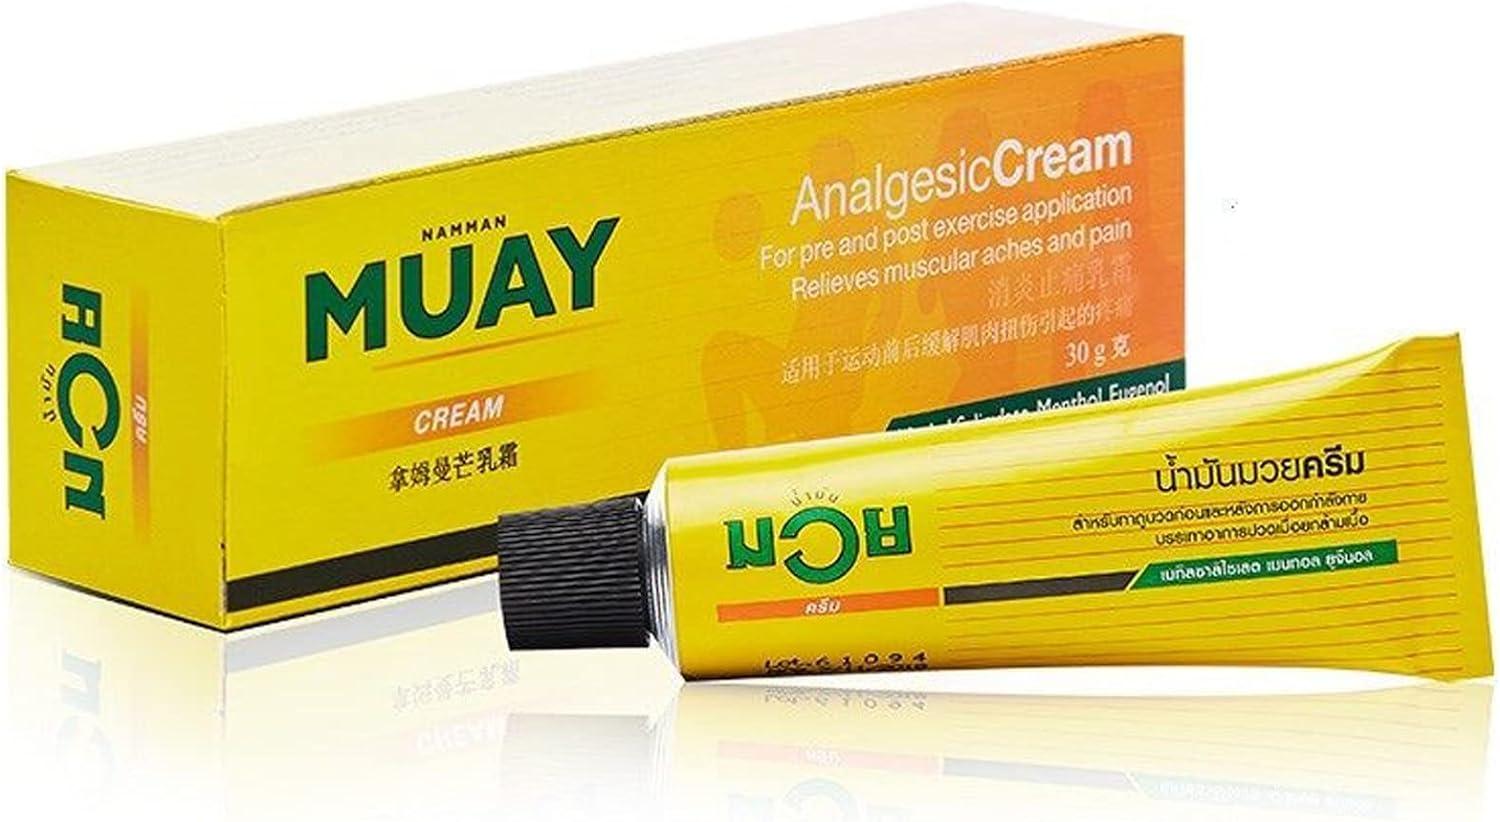 Namman Muay Analgesic Cream 30 Gram